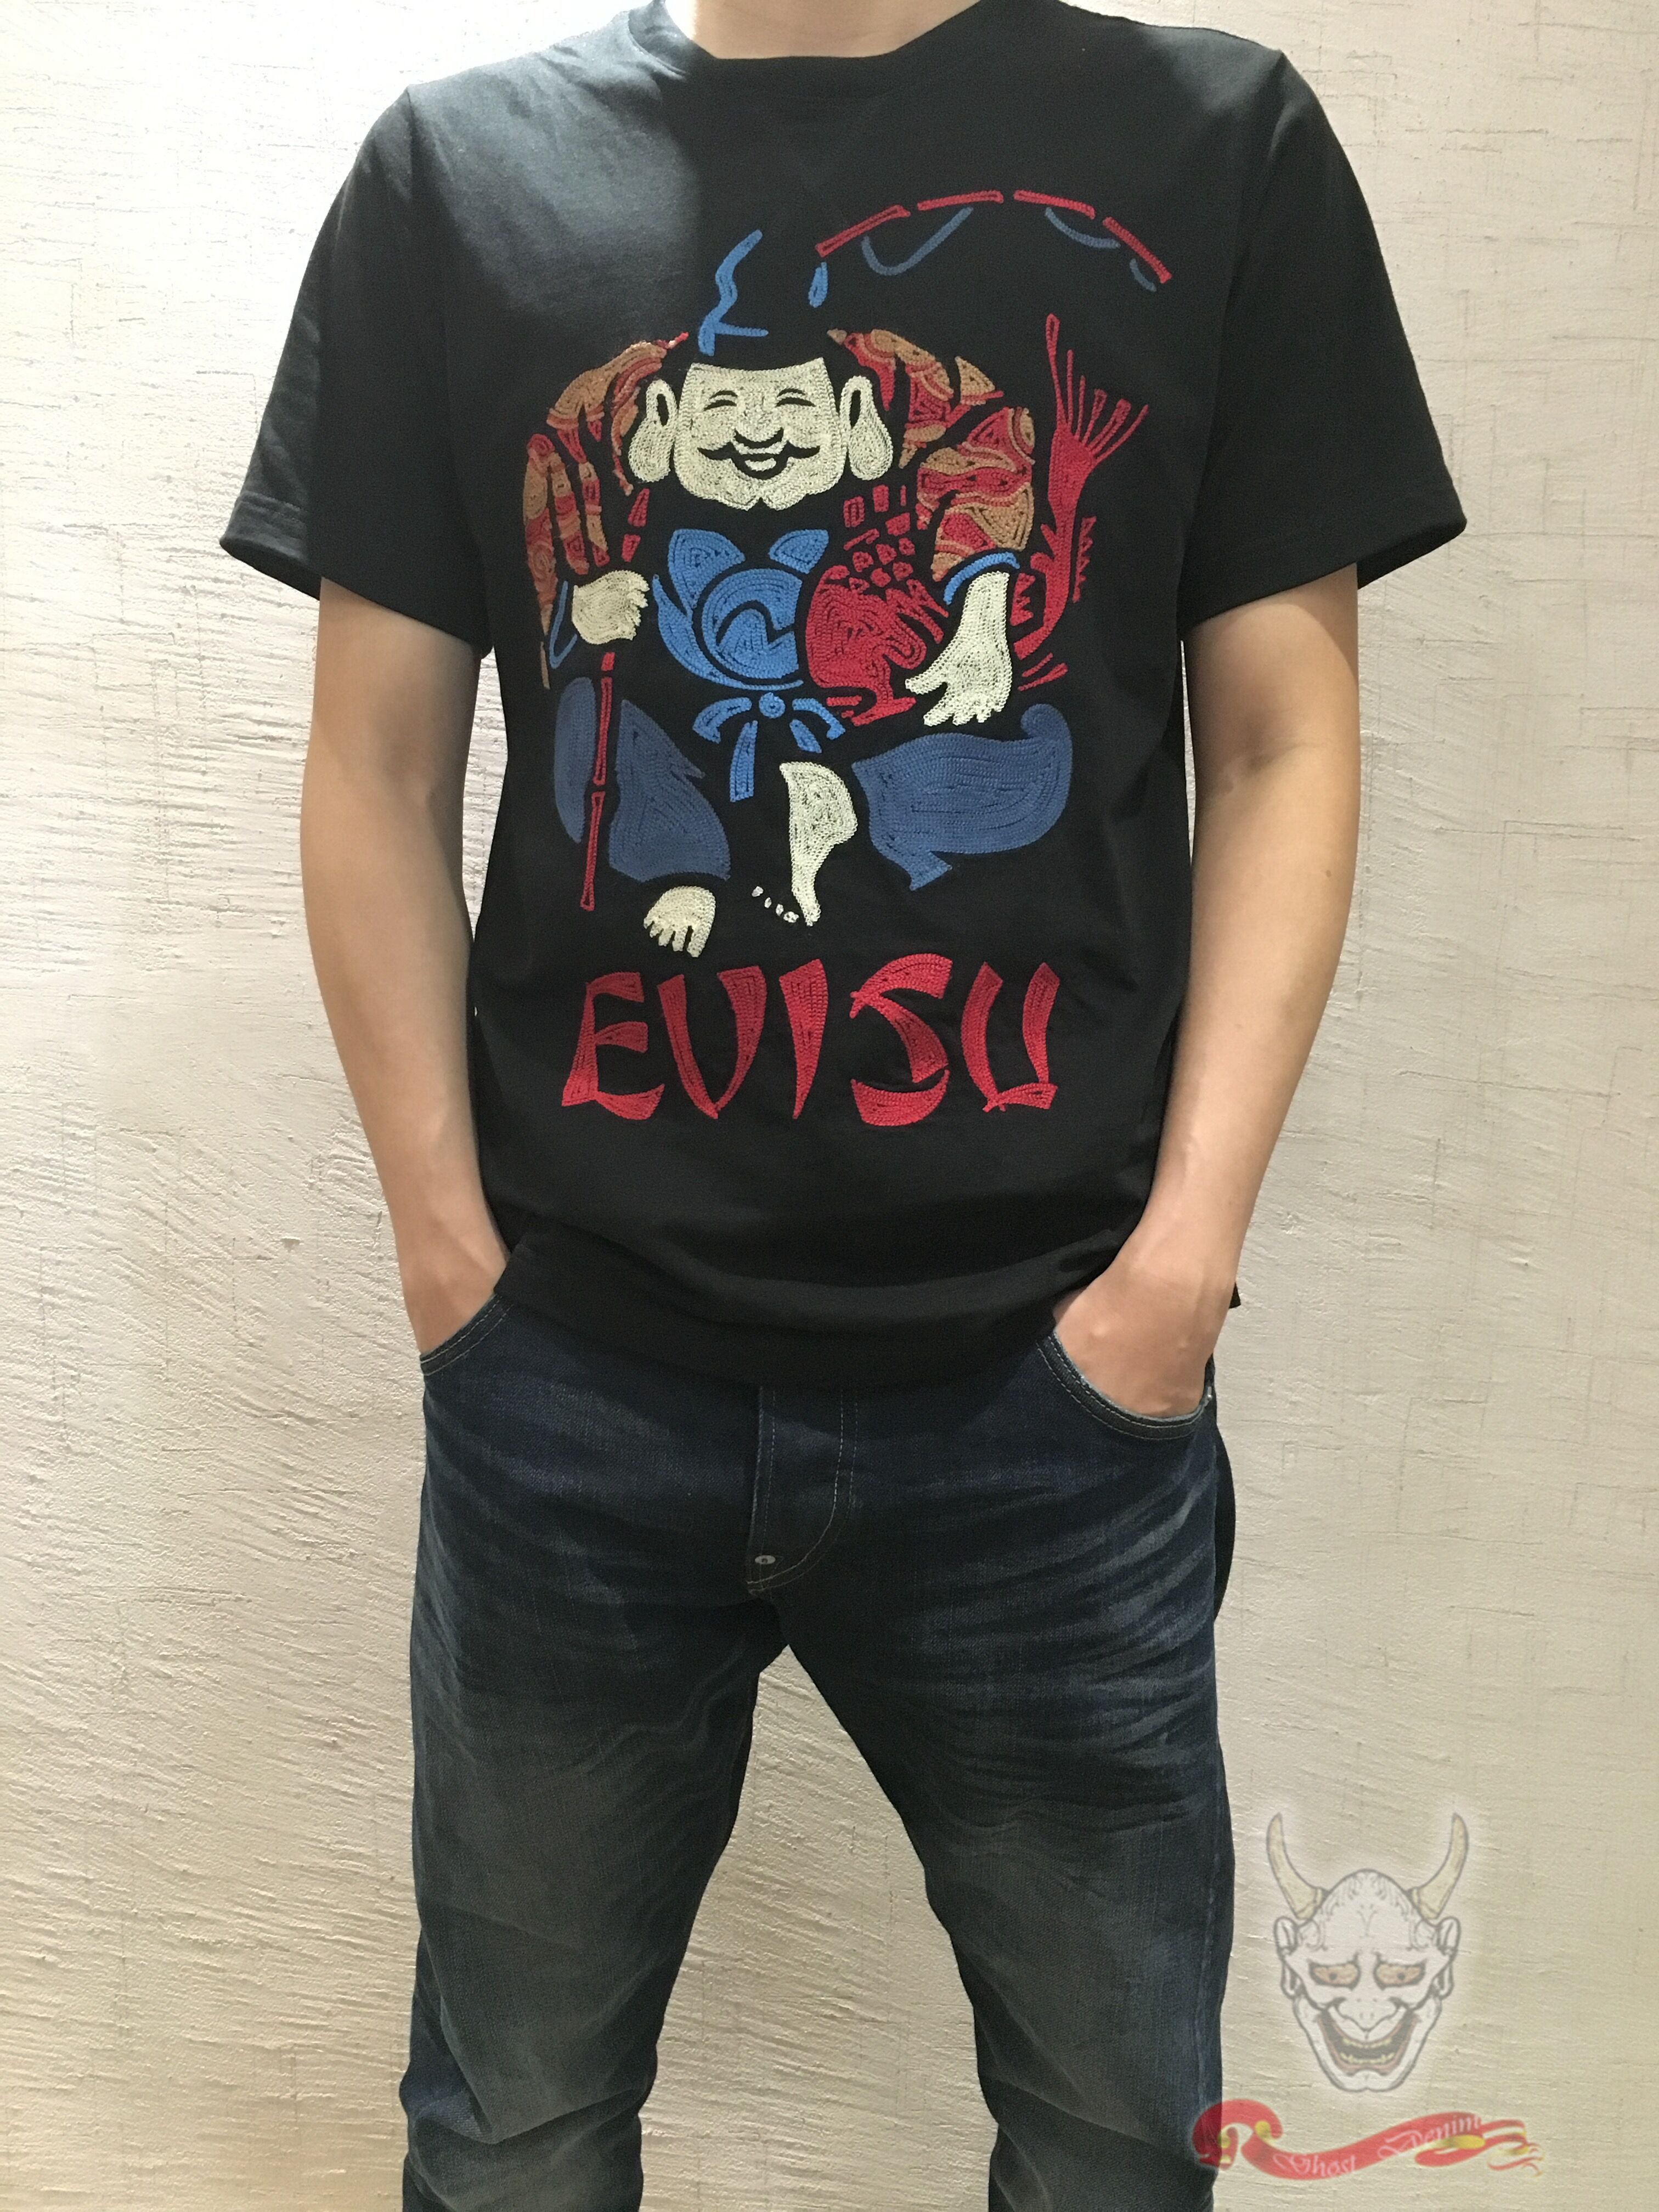 丁丁香港潮店evisu男装个性佛头图案短袖t恤17夏ts546